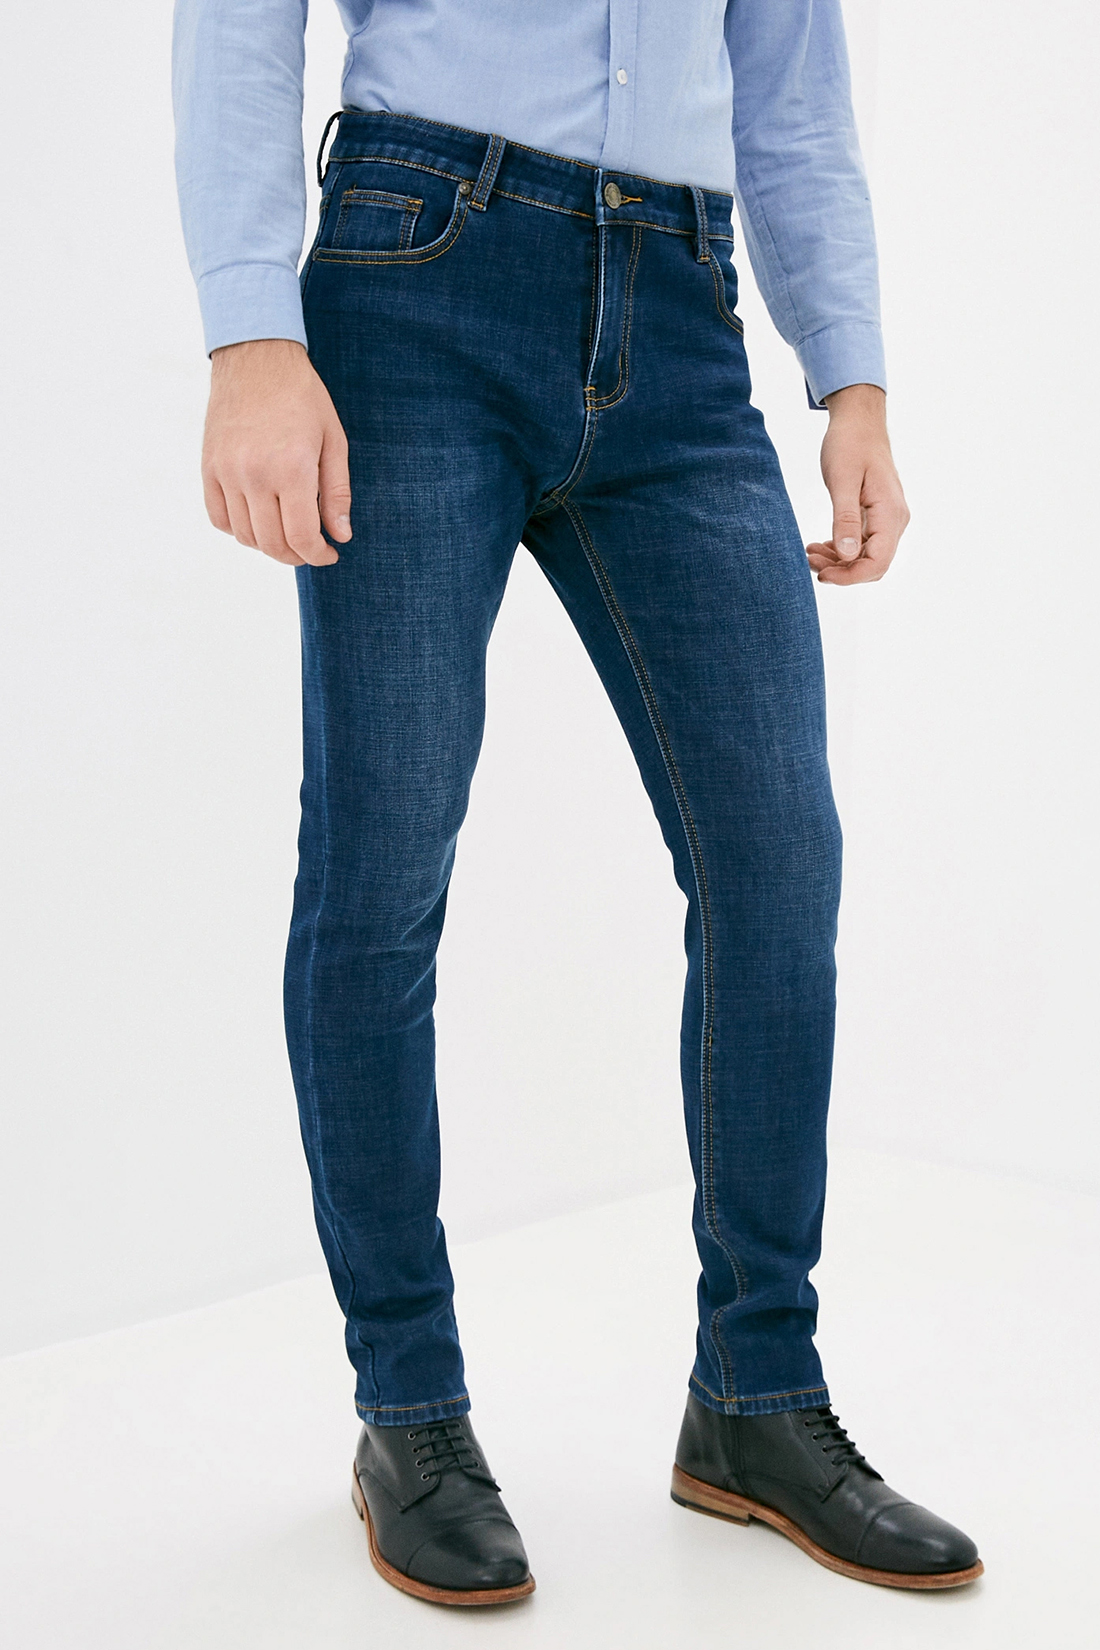 Утеплённые джинсы (арт. baon B800507), размер 30, цвет dark blue denim#синий Утеплённые джинсы (арт. baon B800507) - фото 1